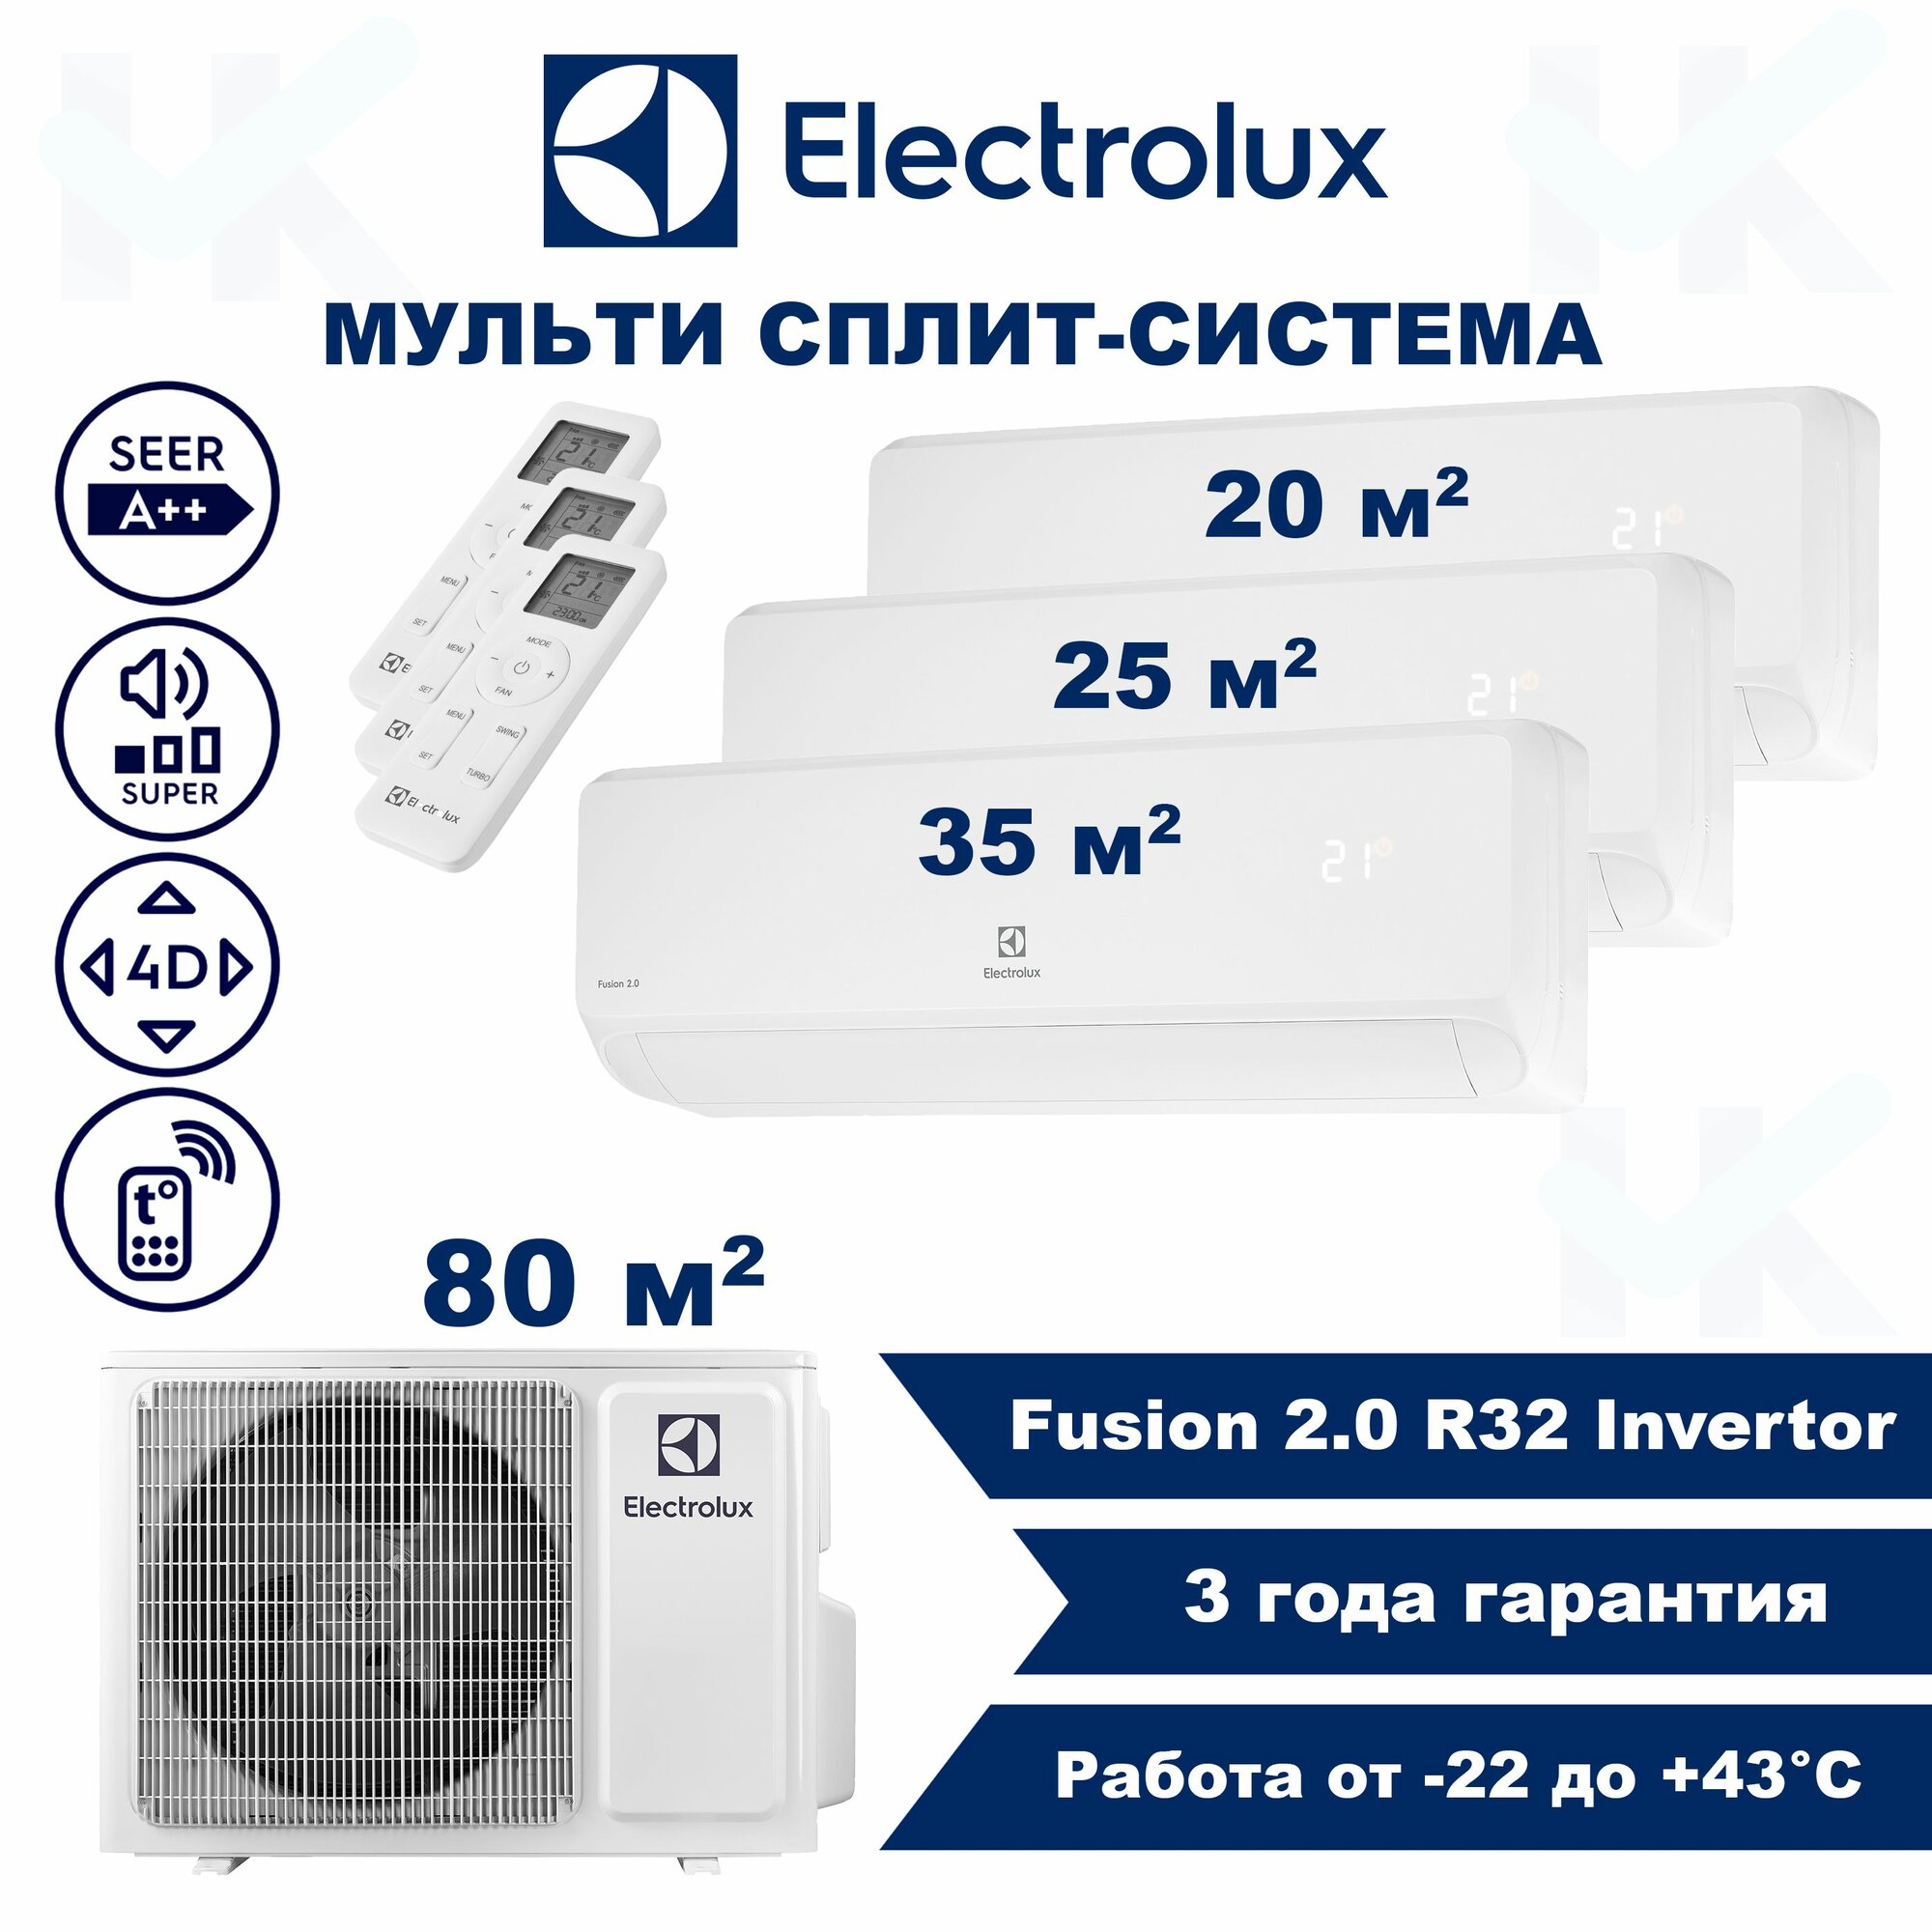 Инверторная мульти сплит-система ELECTROLUX серии Fusion 2.0 на 3 комнаты (20 м2 + 25 м2 + 35 м2) с наружным блоком 80 м2, Постоянная работа